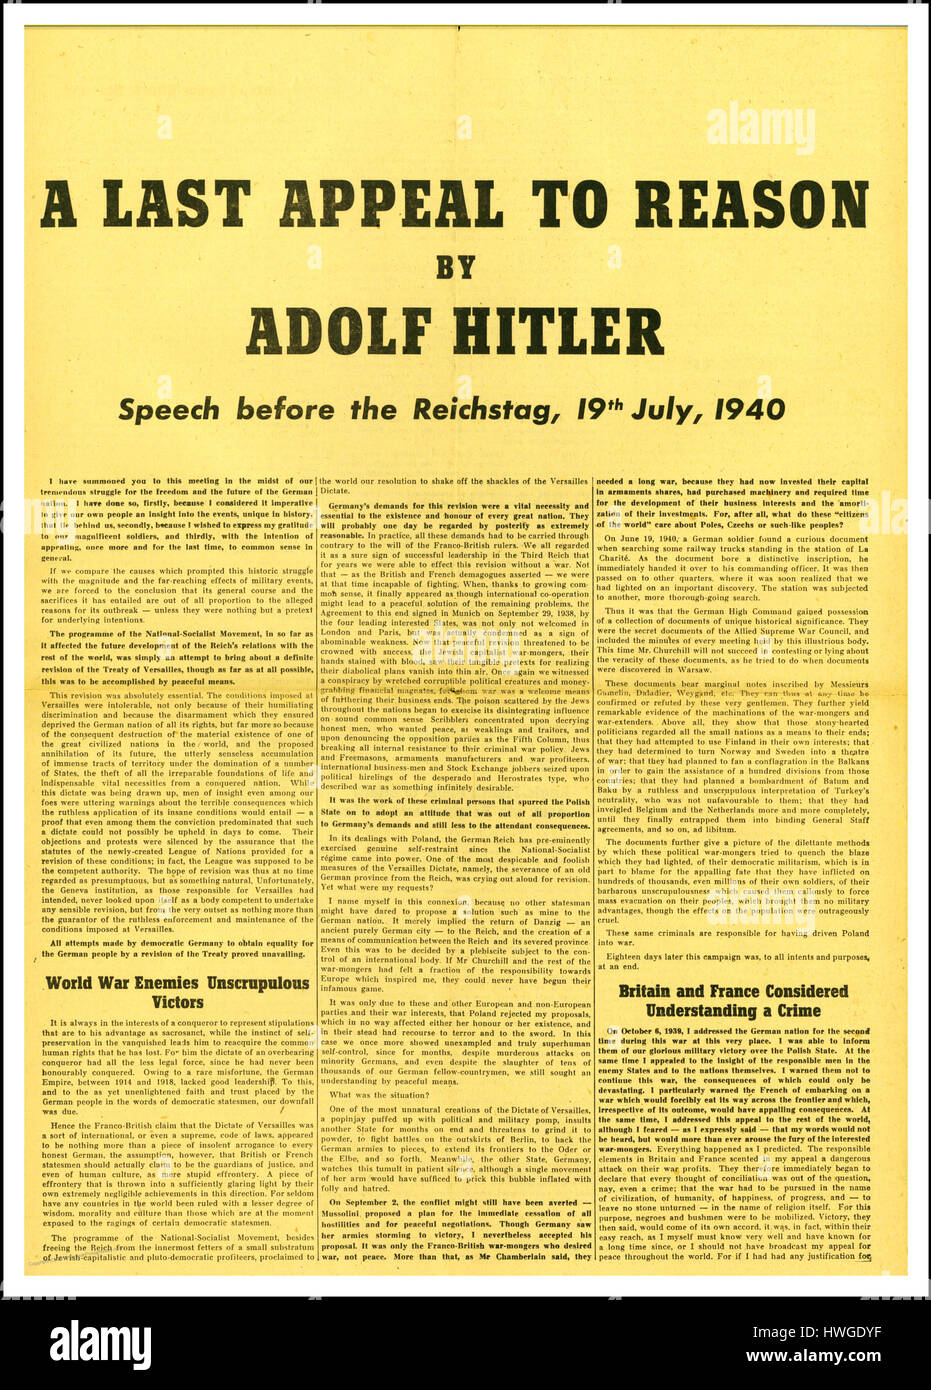 Rede von Adolf Hitler Reichstag 19. Juli 1940 seine aggressive Kriegstreiberei "Letzten Appell an Vernunft" zu rechtfertigen Stockfoto